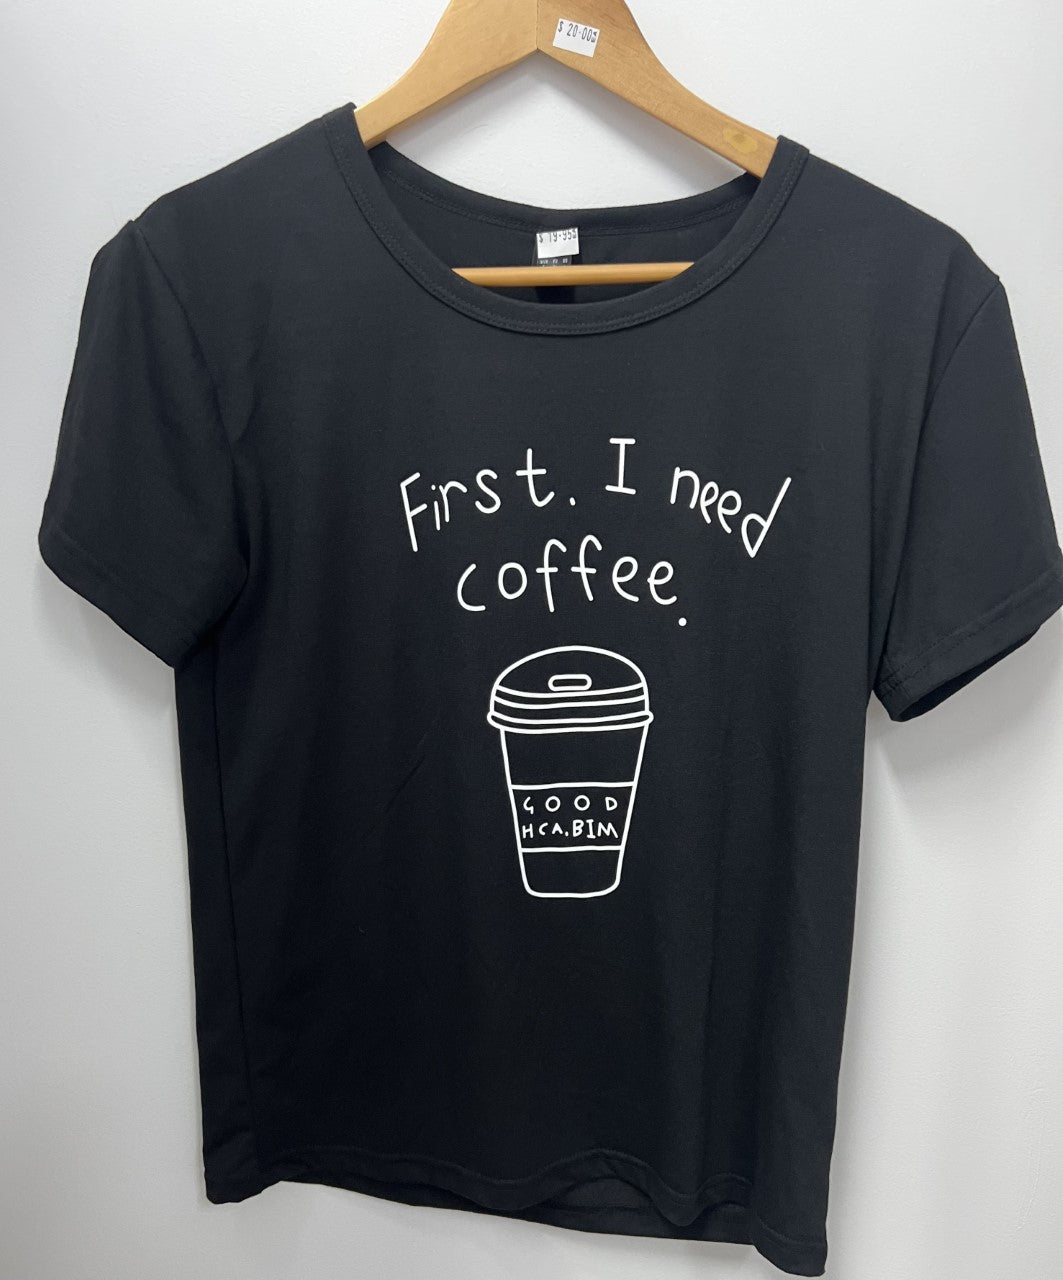 First I Need Coffee S/S Tee Shirt